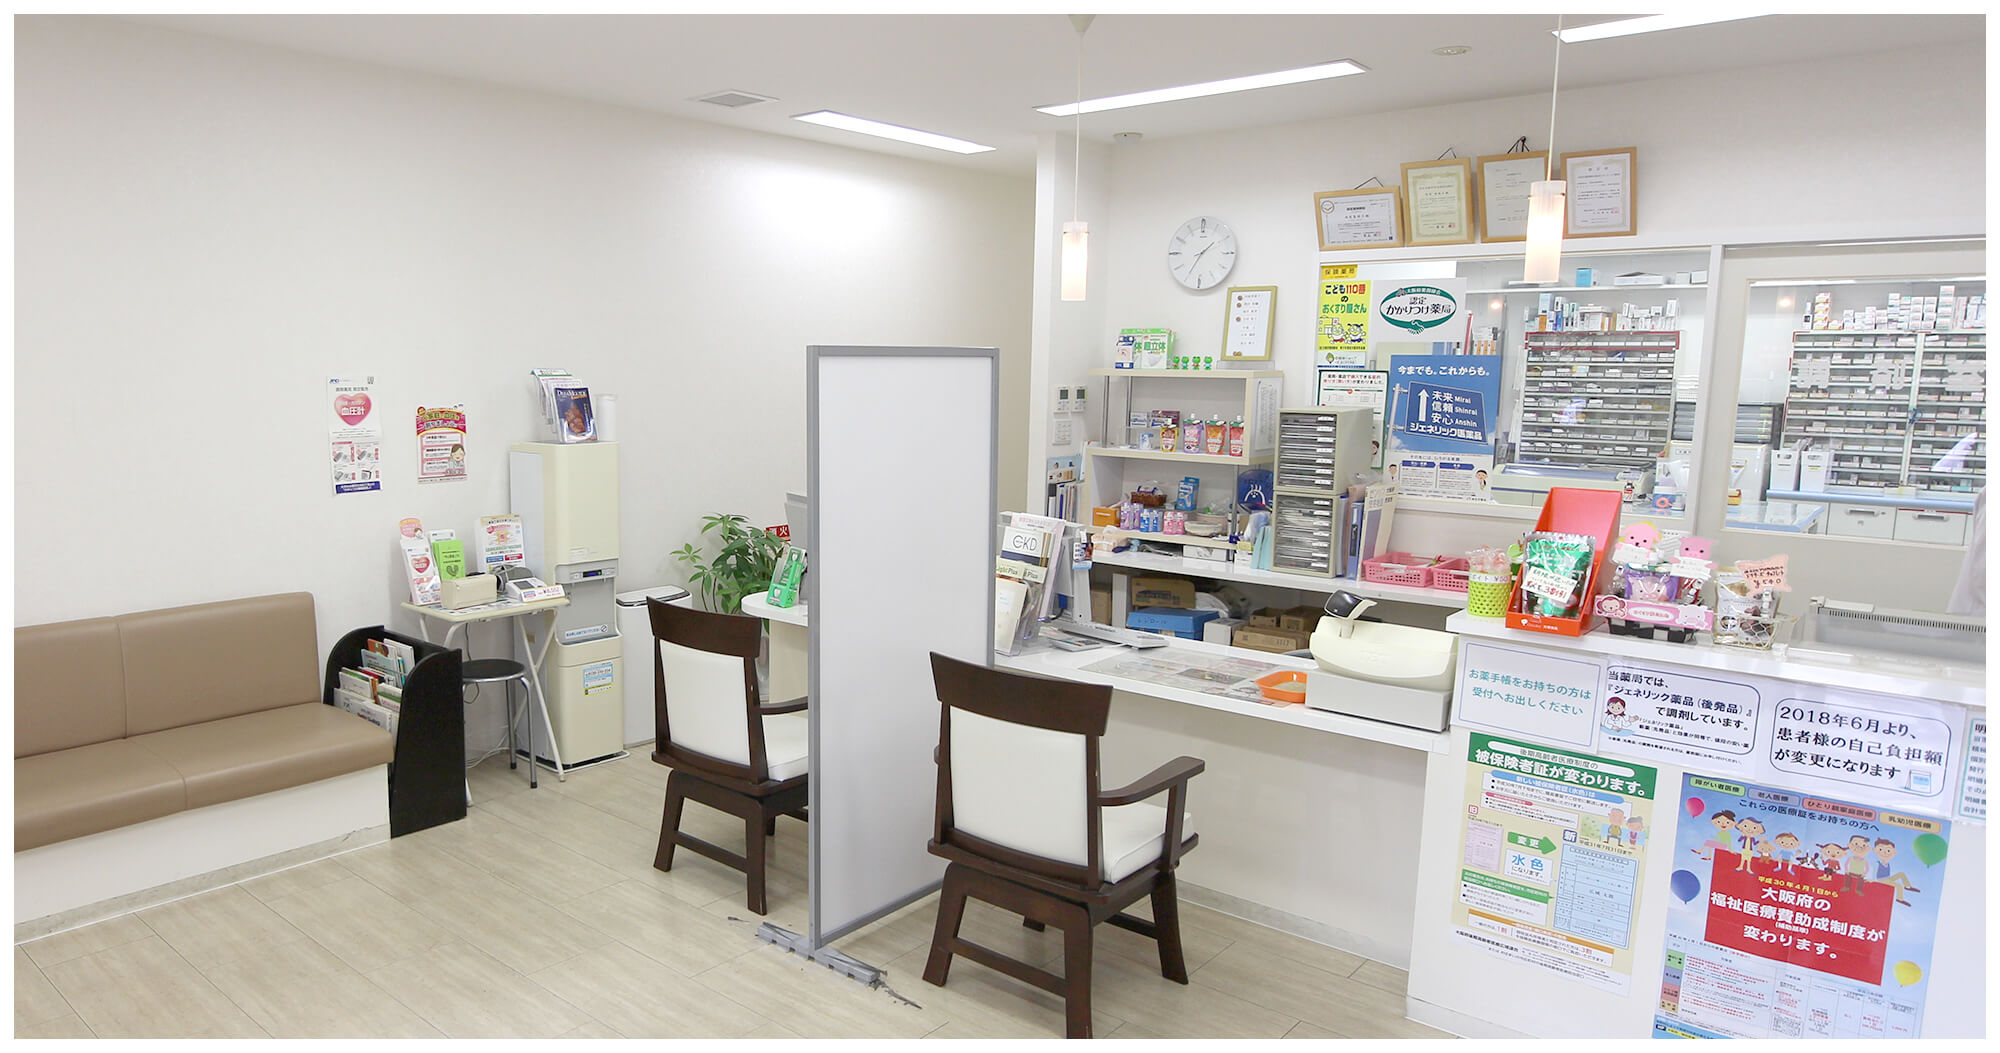 「迅速・正確・安心」選ばれ続ける薬局をめざして。大阪府下4店舗。私達ユニバーサル薬局はプロである責任や誇りを持って皆様の健康的な生活をサポートします。